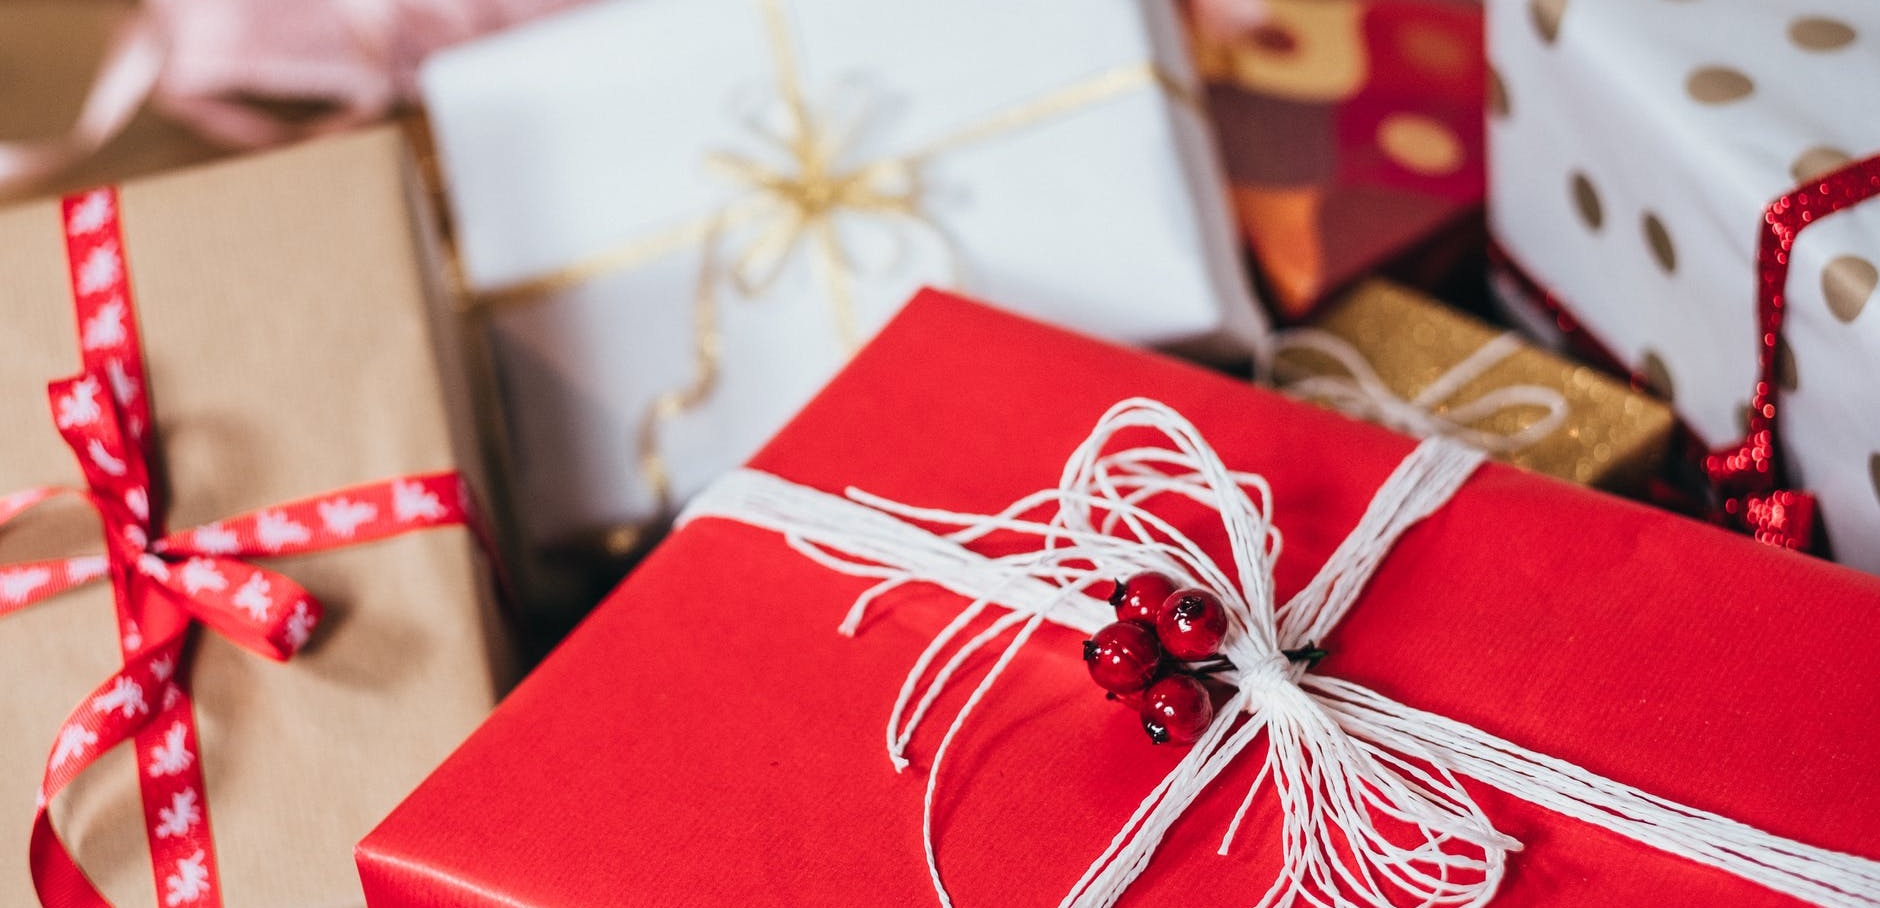 A pocos días de Navidad: consejos que te ayudarán a realizar compras y regalos de forma consciente